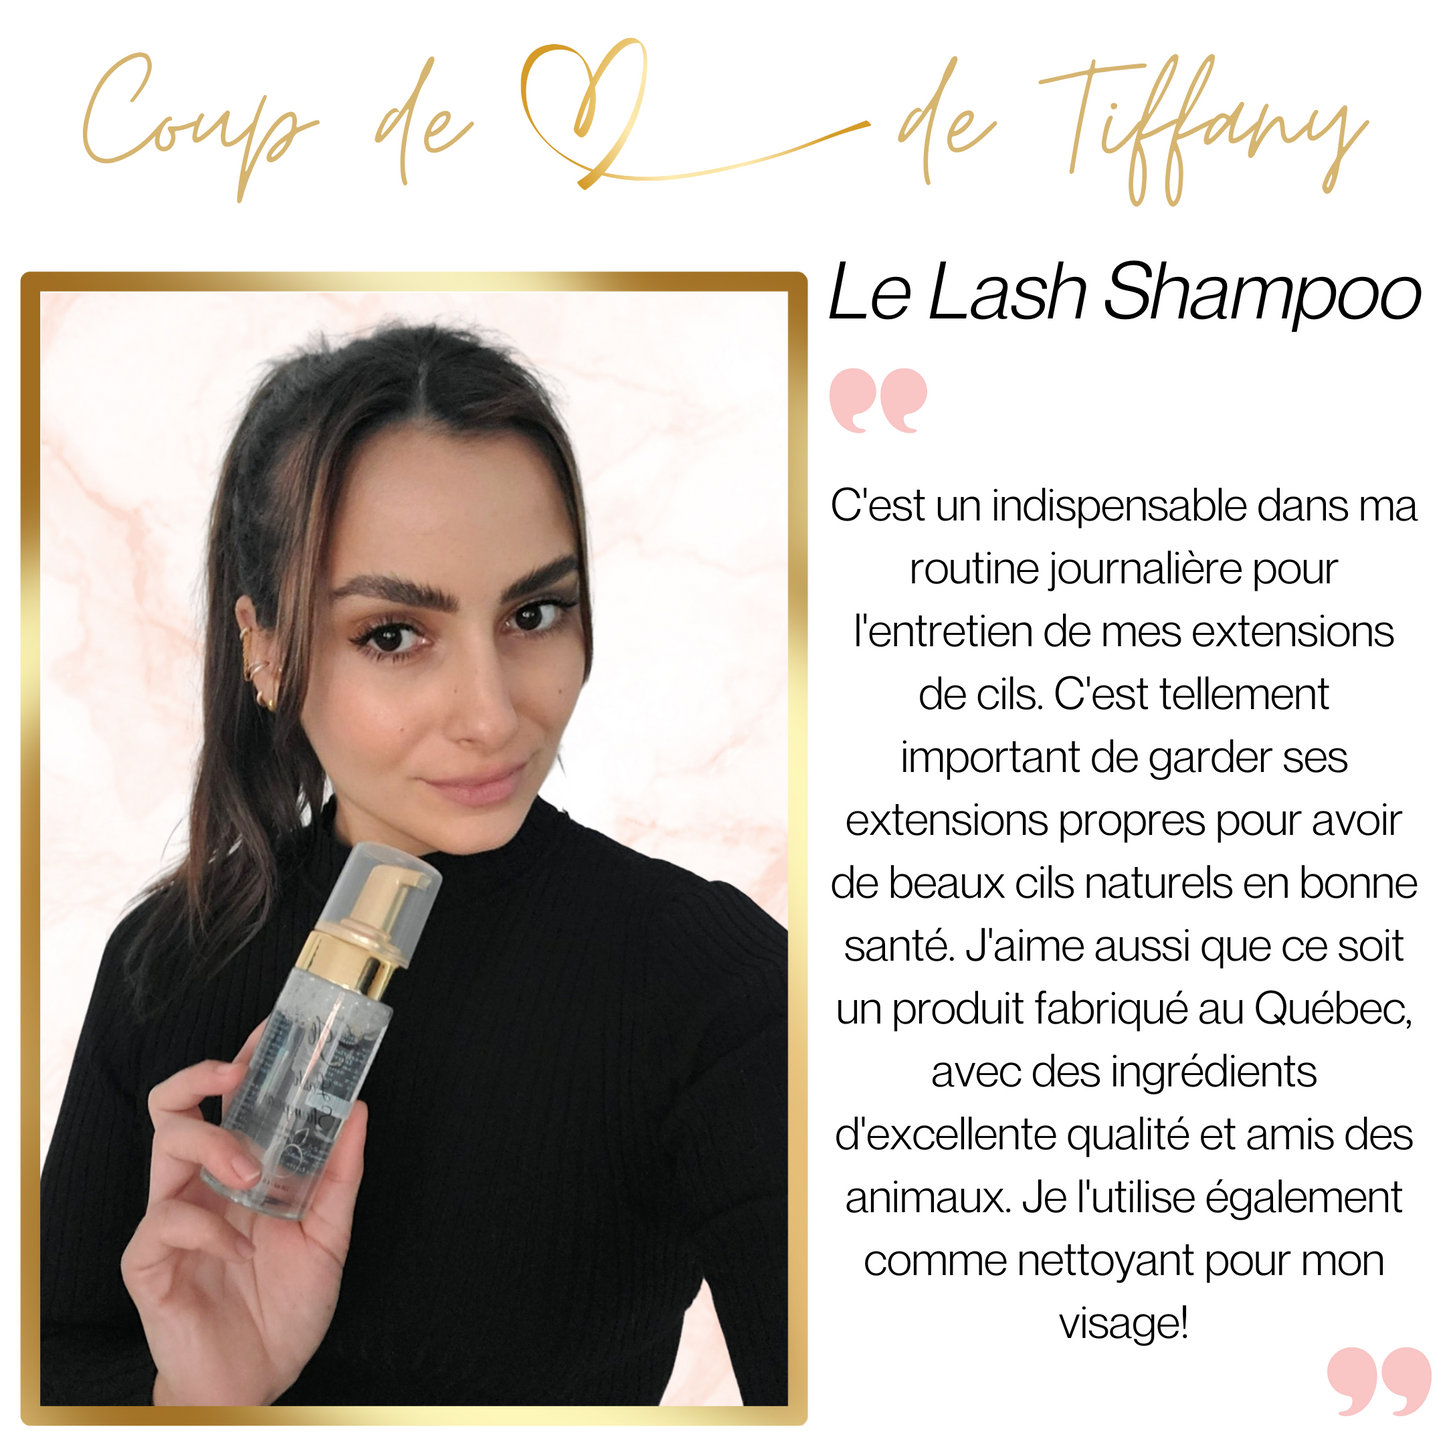 Lash Shampoo (Shampoing à cils)